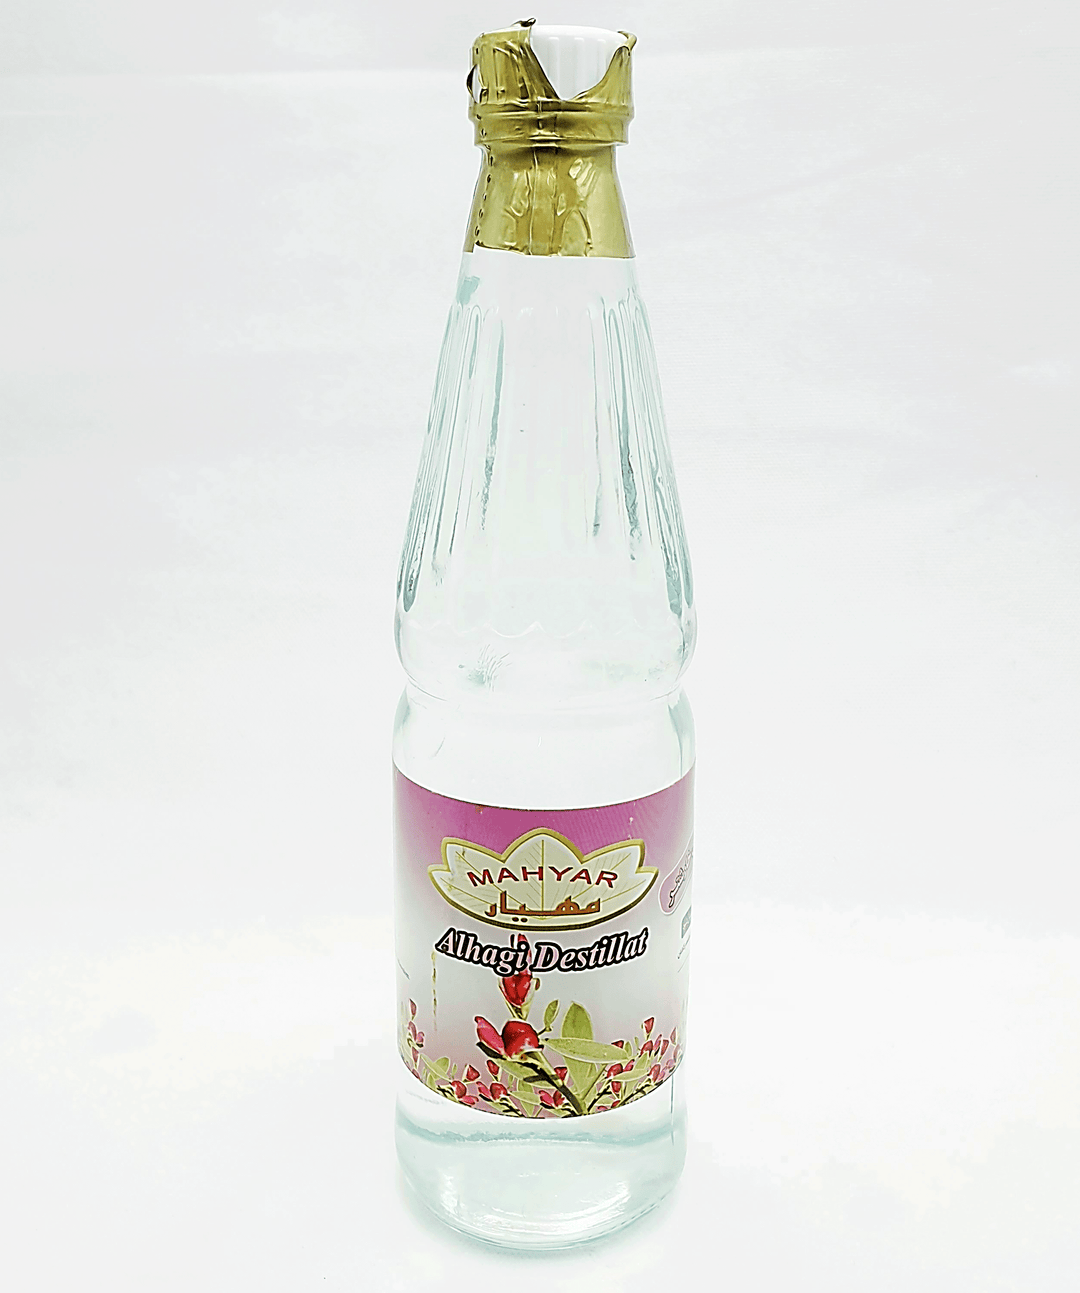 Mahyar Araghe Kharshotor - Alhagiwasser 430ml - Persienmarkt